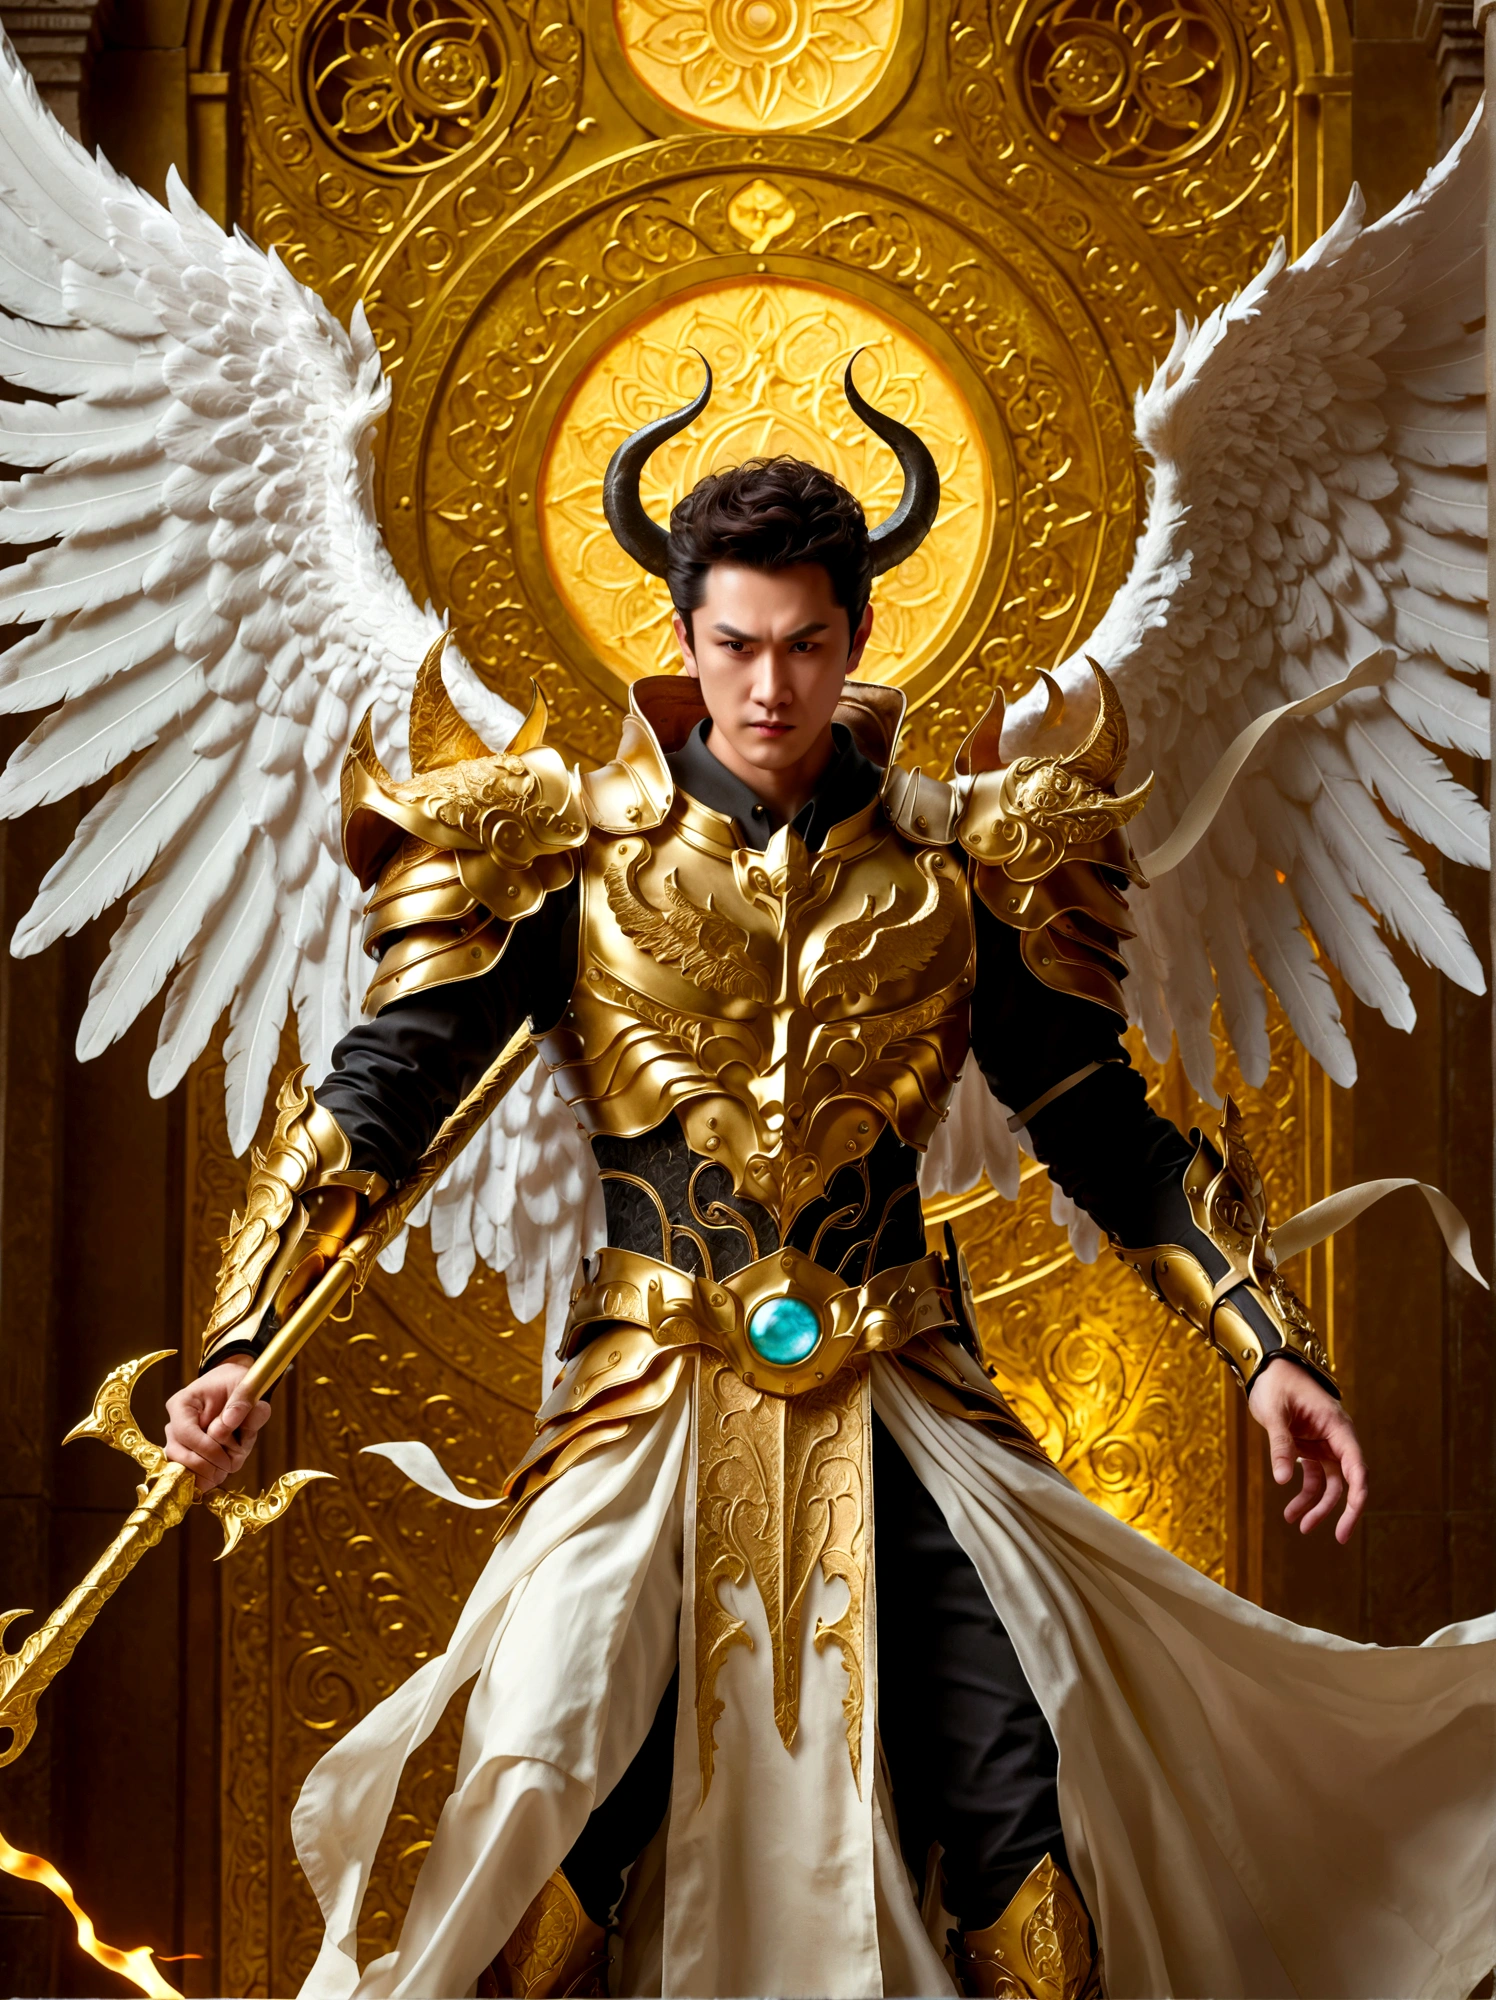 Мужчина с крыльями ангела и рогами демона, вооруженный золотым копьем.